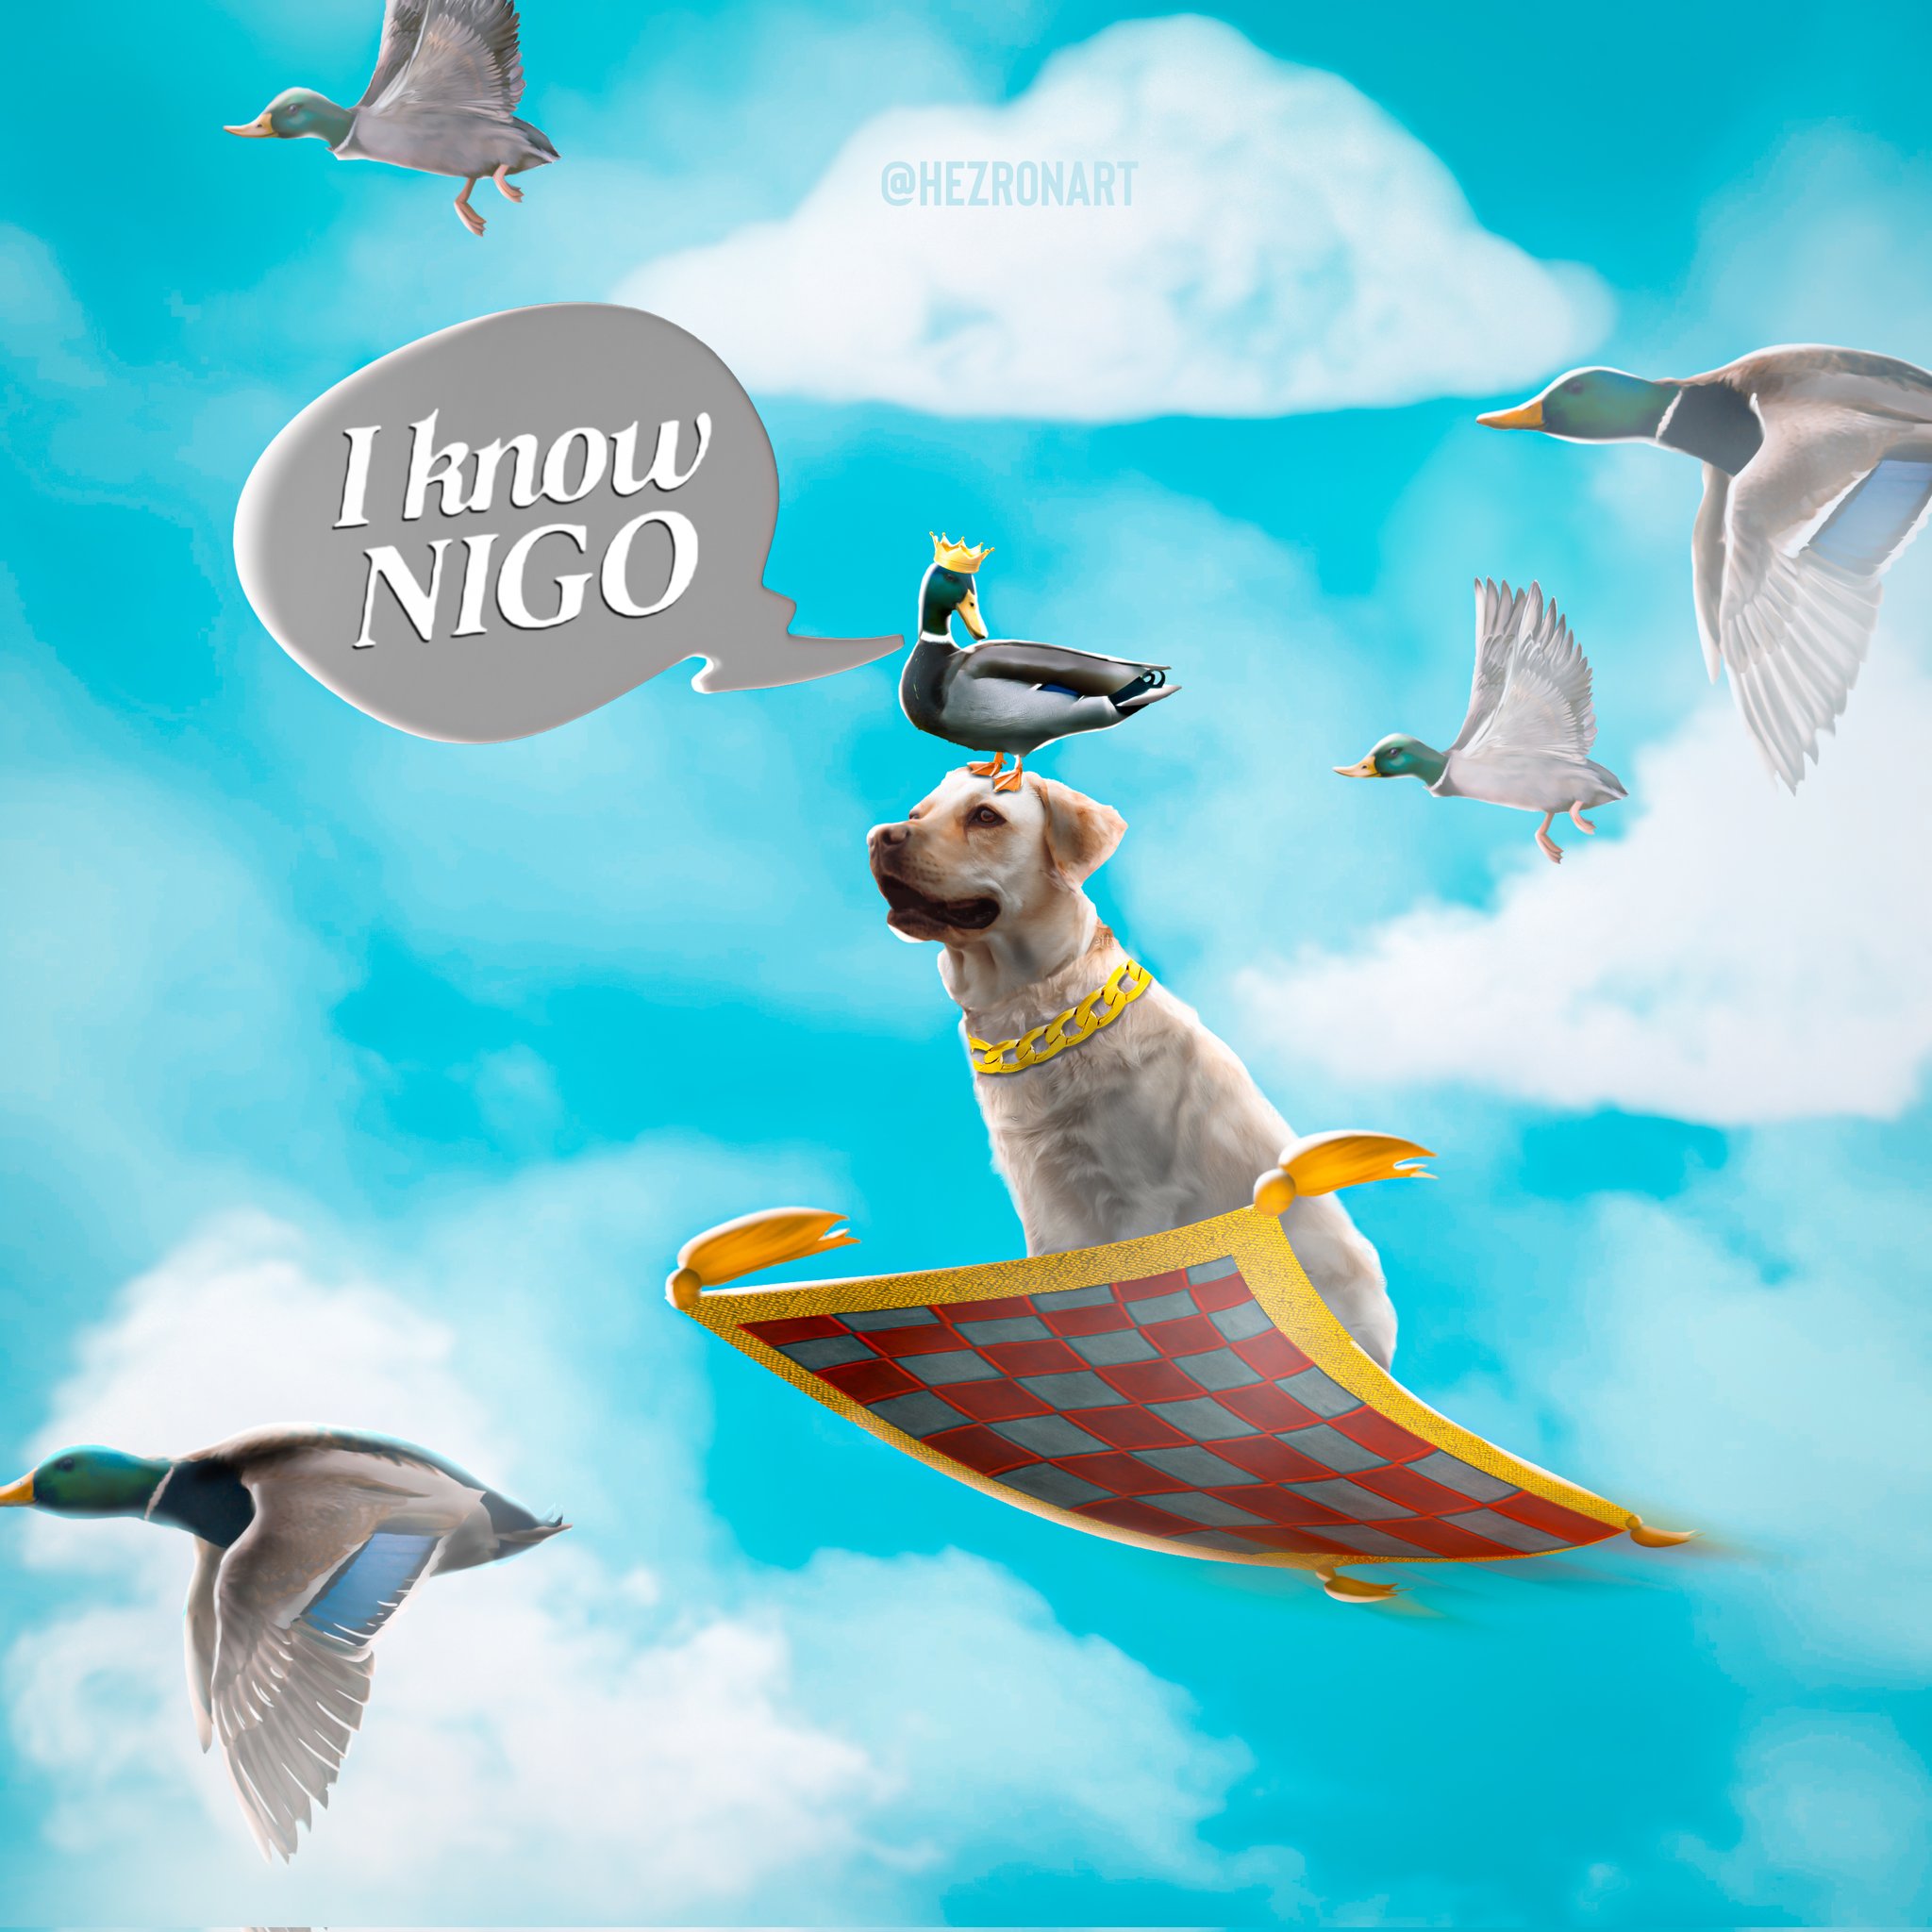 hezronart on X: I know Nigo! By Nigo 3d cover. Have a great evening  everyone! #nigo #3dcover #realistified  / X